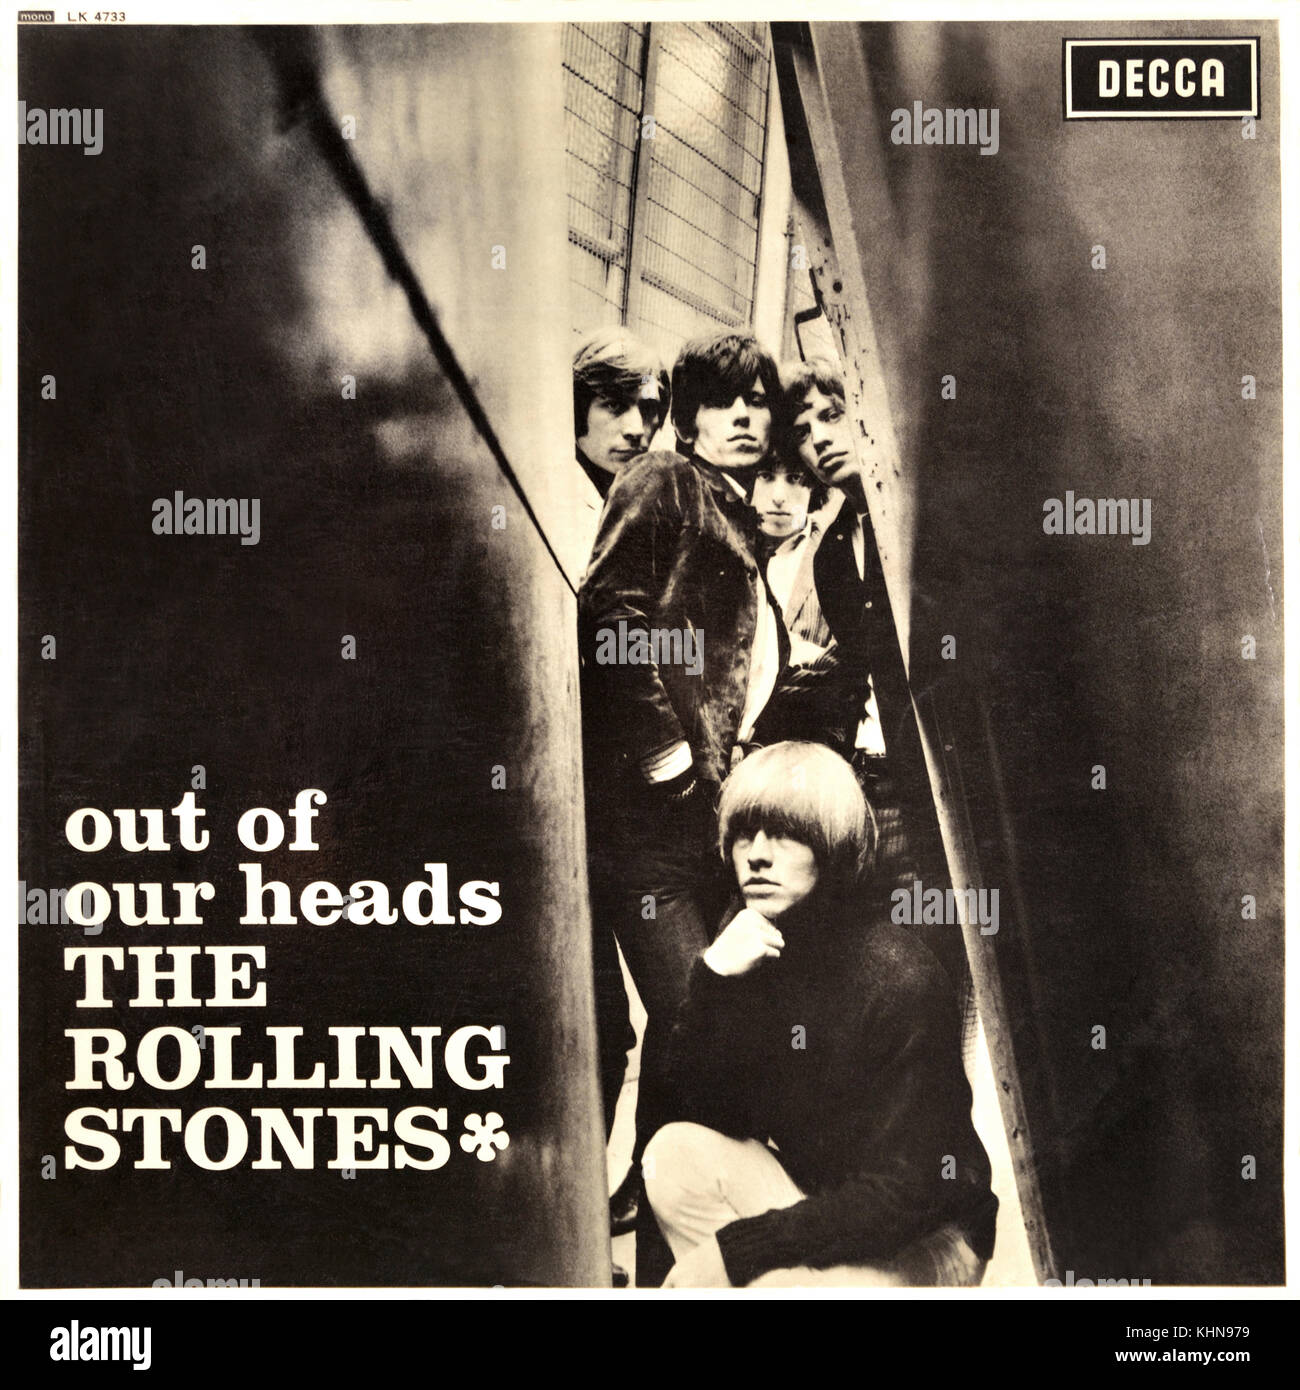 Compartir 20+ imagen portadas de discos de los rolling stones